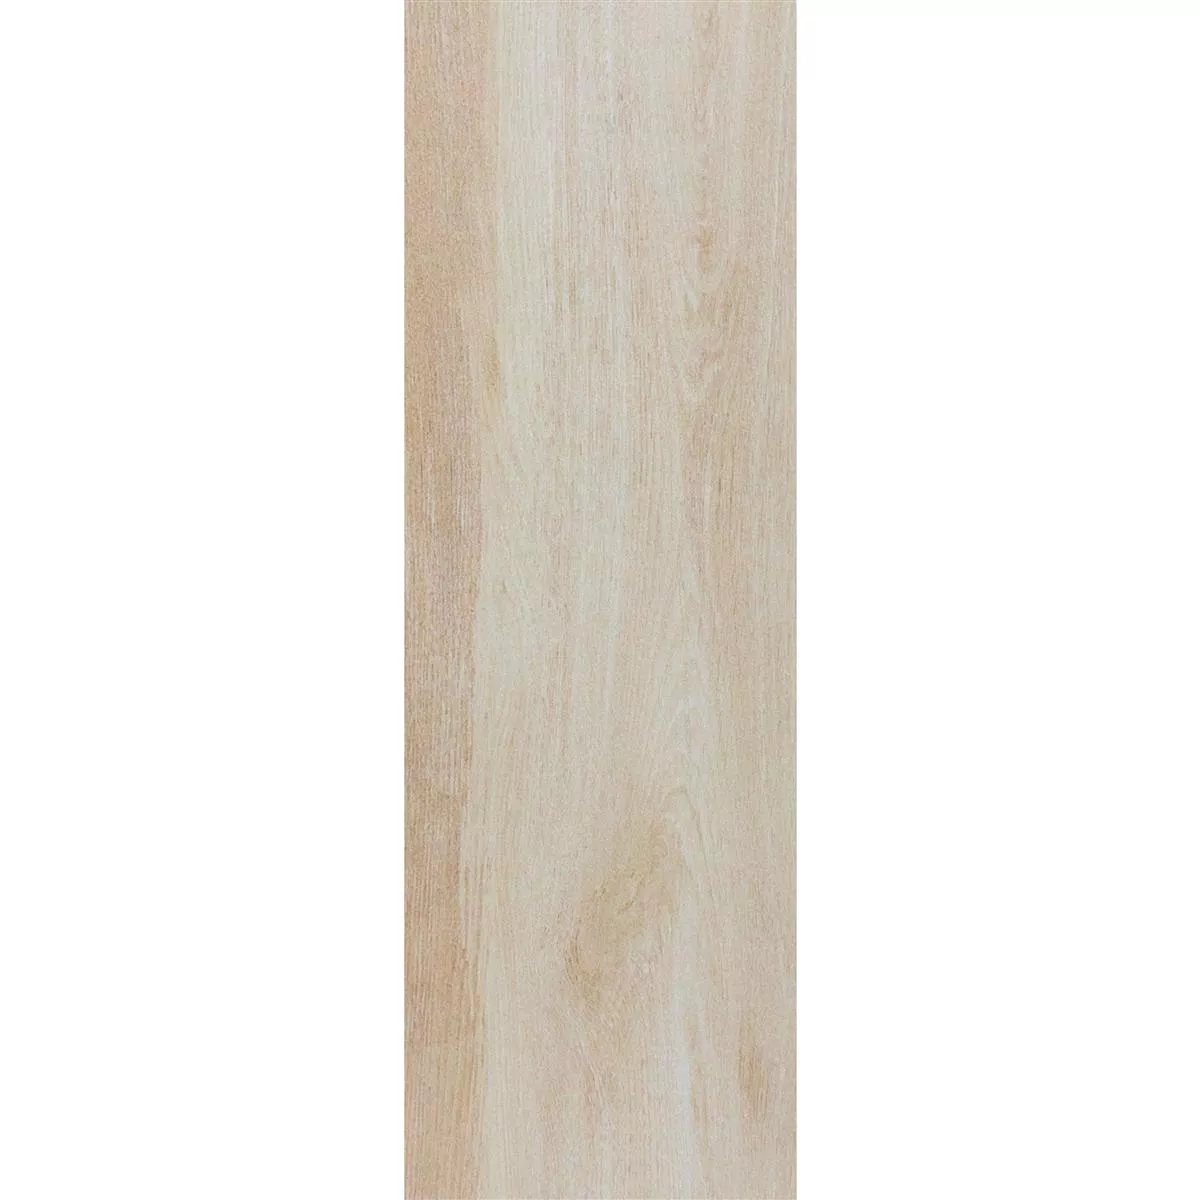 Próbka Płytki Podłogowe Wygląd Drewna Caledonia Beżowy 30x120cm